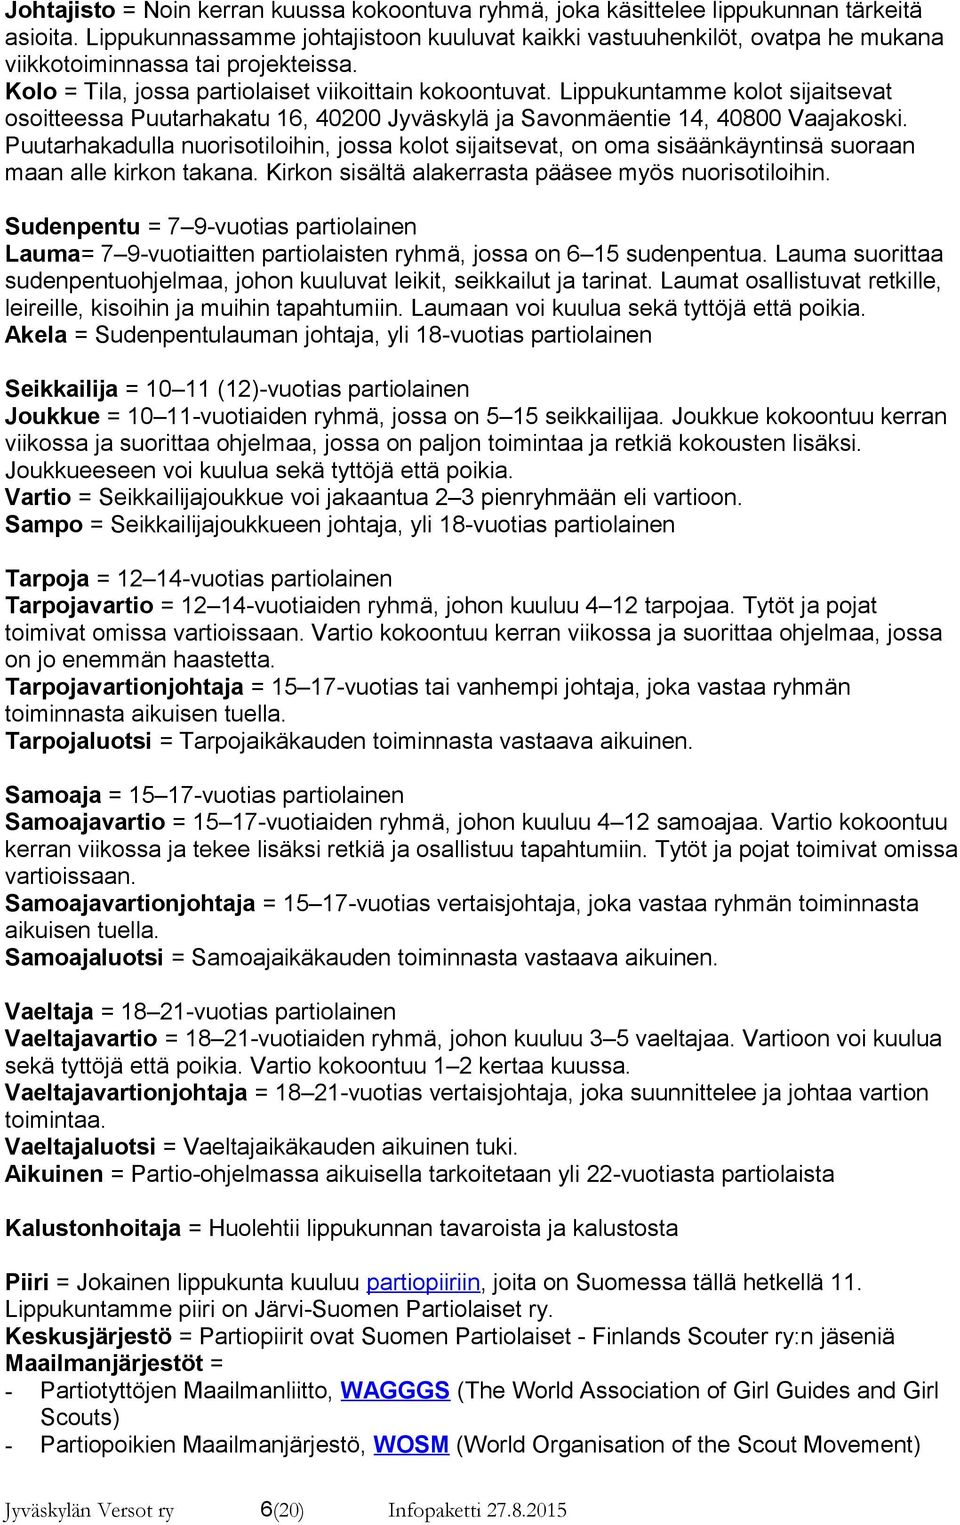 Lippukuntamme kolot sijaitsevat osoitteessa Puutarhakatu 16, 40200 Jyväskylä ja Savonmäentie 14, 40800 Vaajakoski.